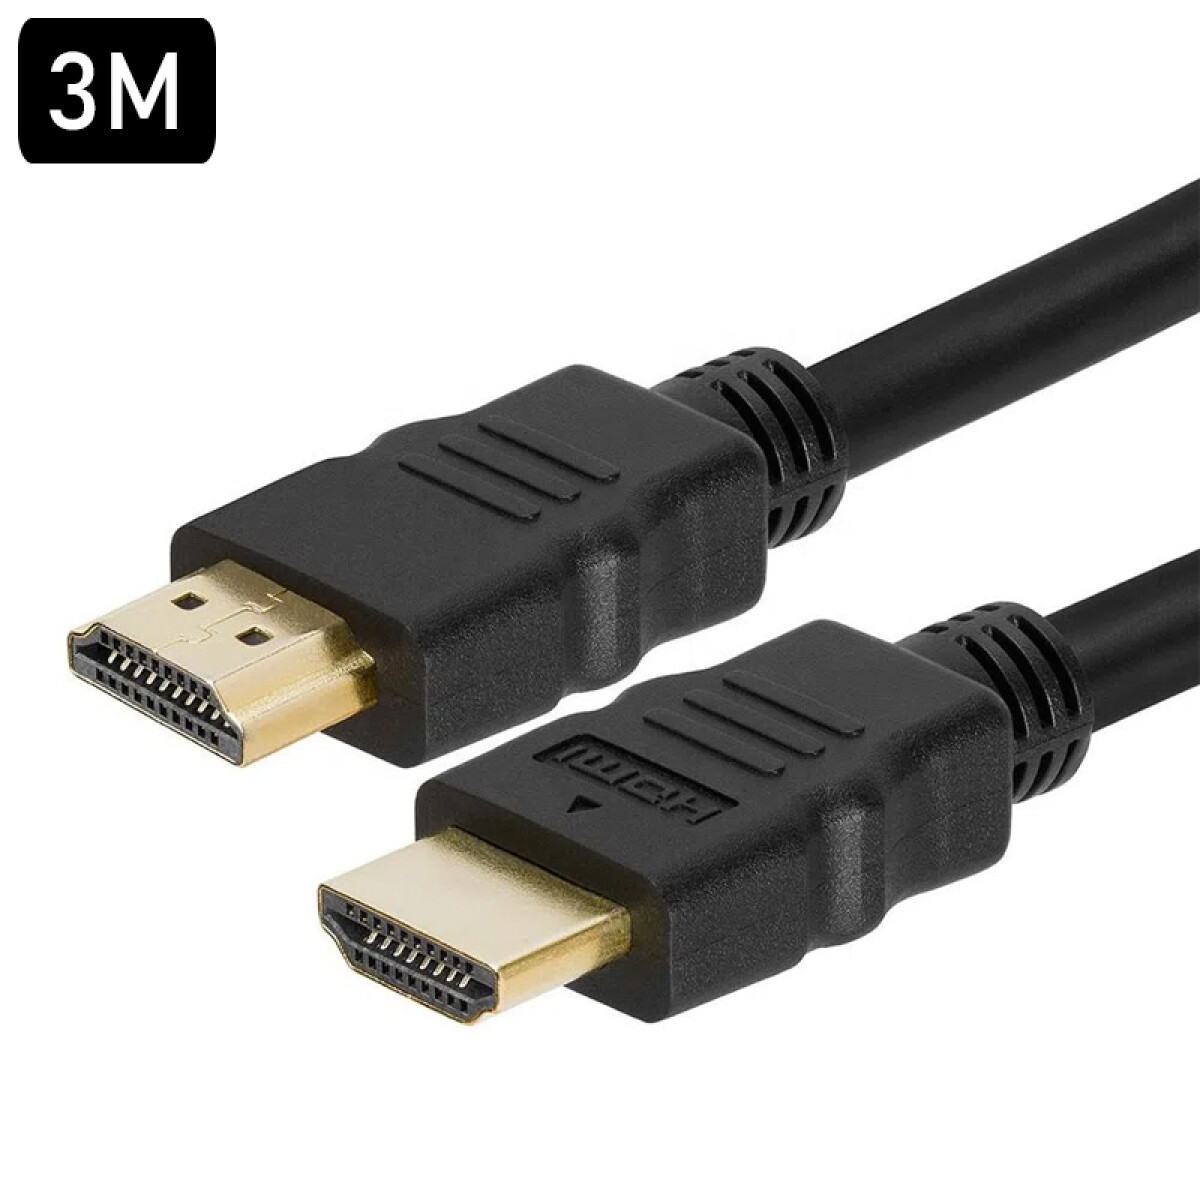 Cable HDMI 3M 4K - Unica 